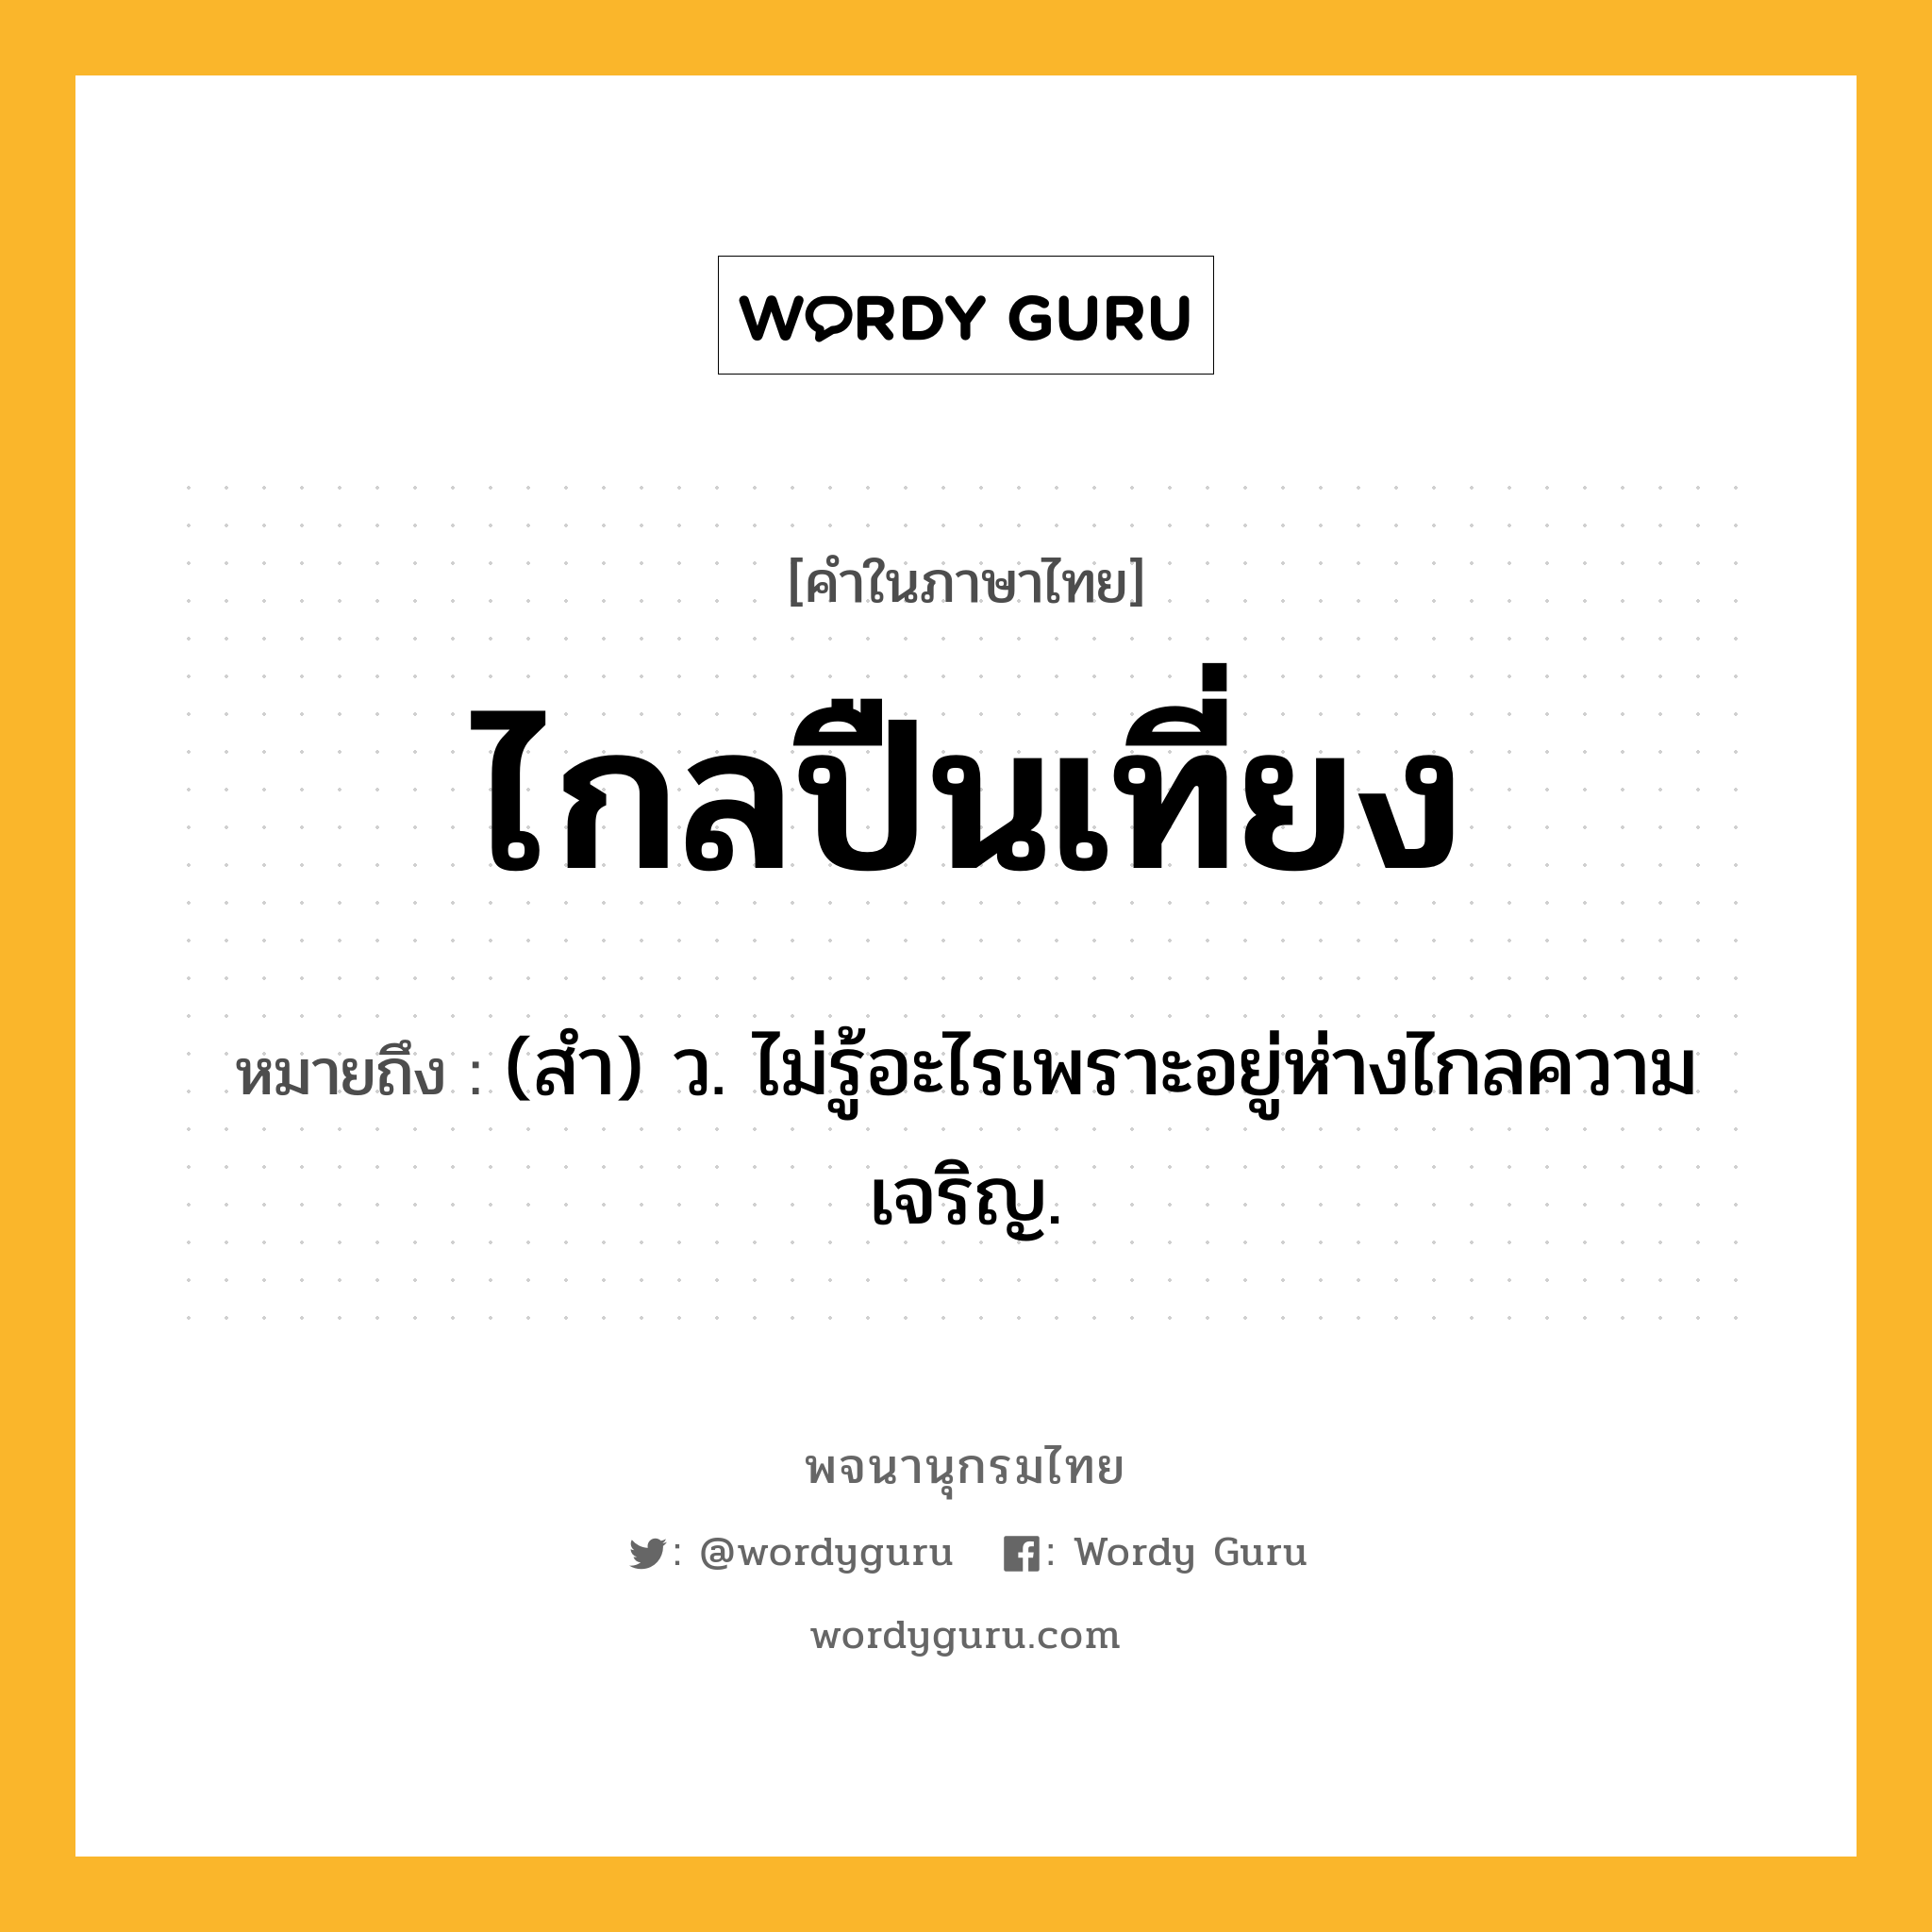 ไกลปืนเที่ยง ความหมาย หมายถึงอะไร?, คำในภาษาไทย ไกลปืนเที่ยง หมายถึง (สํา) ว. ไม่รู้อะไรเพราะอยู่ห่างไกลความเจริญ.